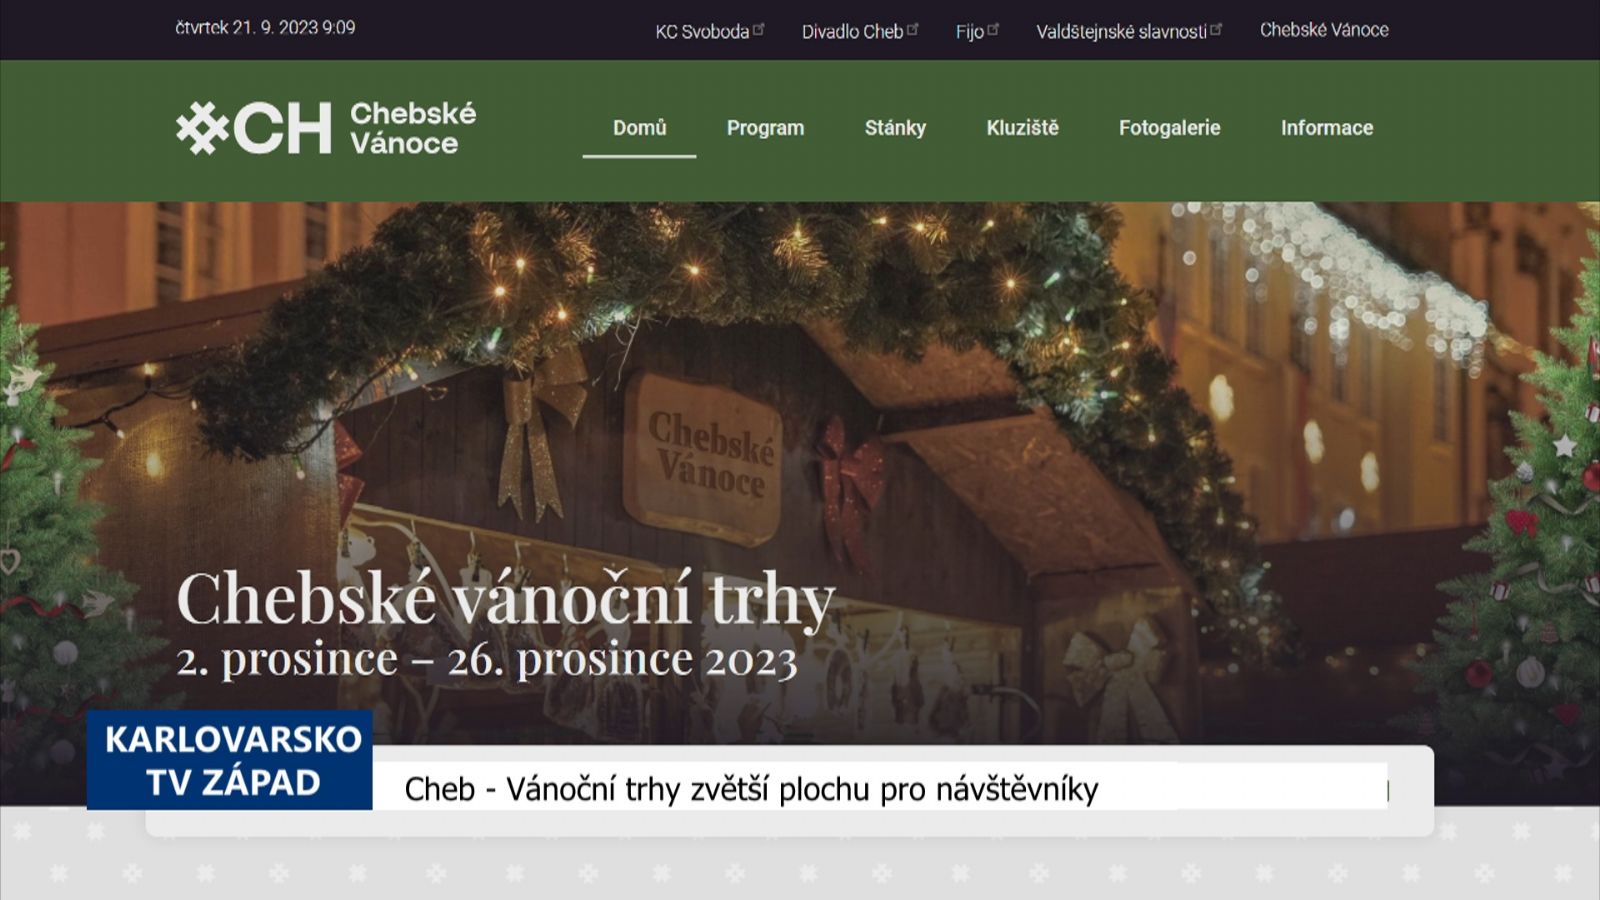 Cheb: Vánoční trhy zvětší plochu pro návštěvníky (TV Západ)